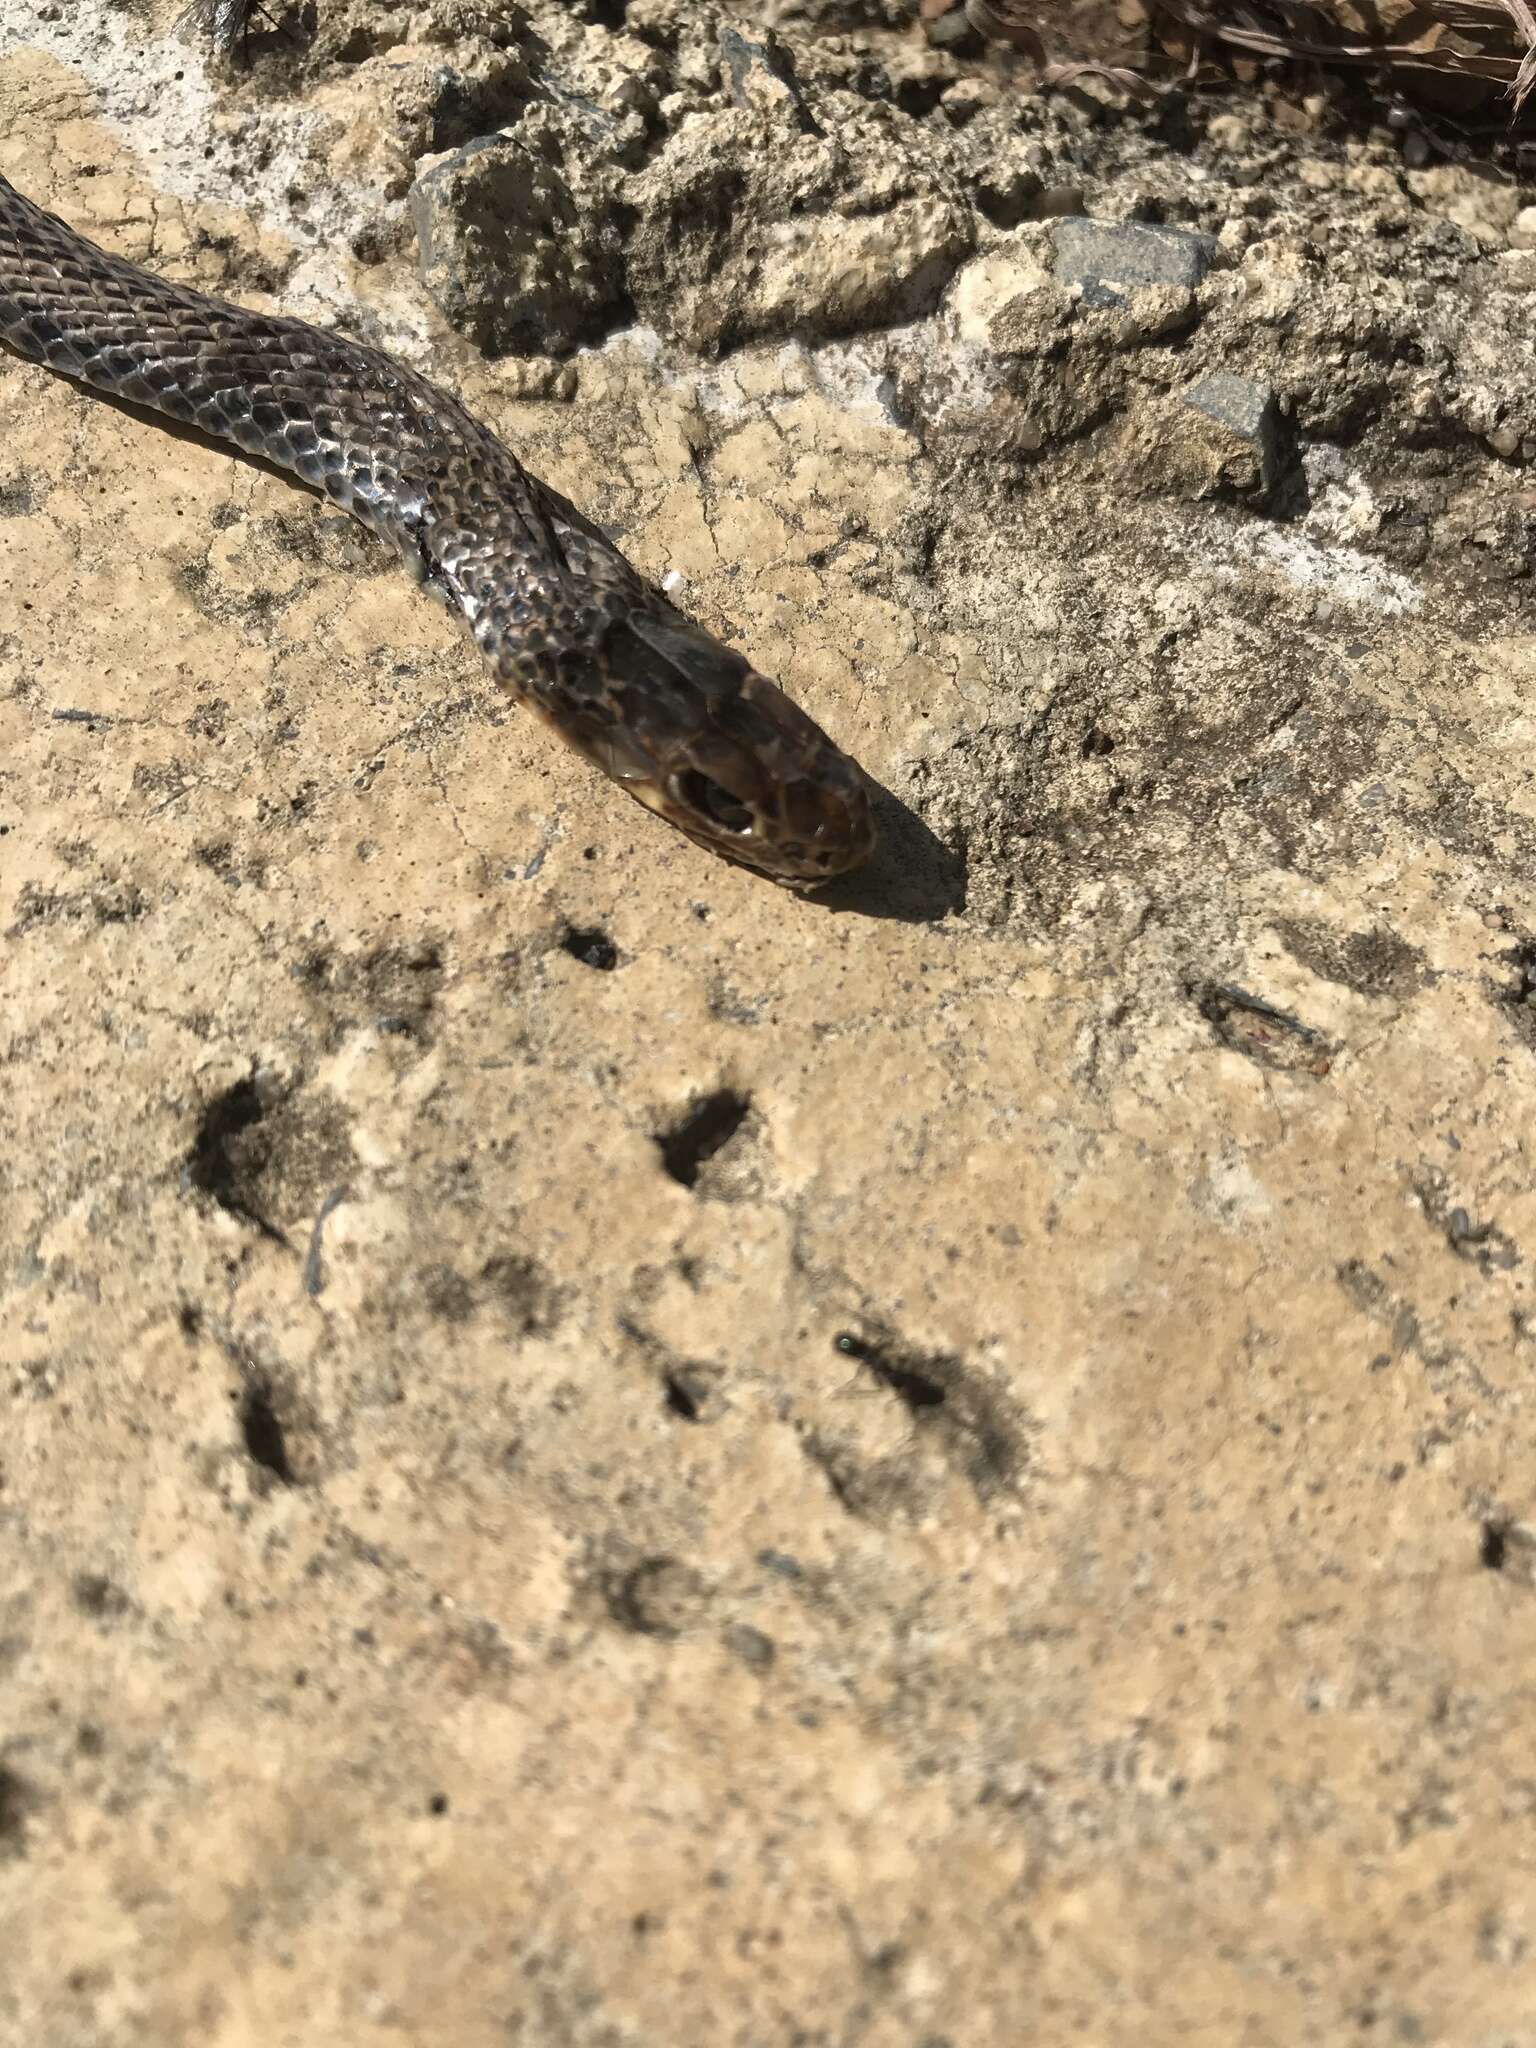 Image of Black whip snake